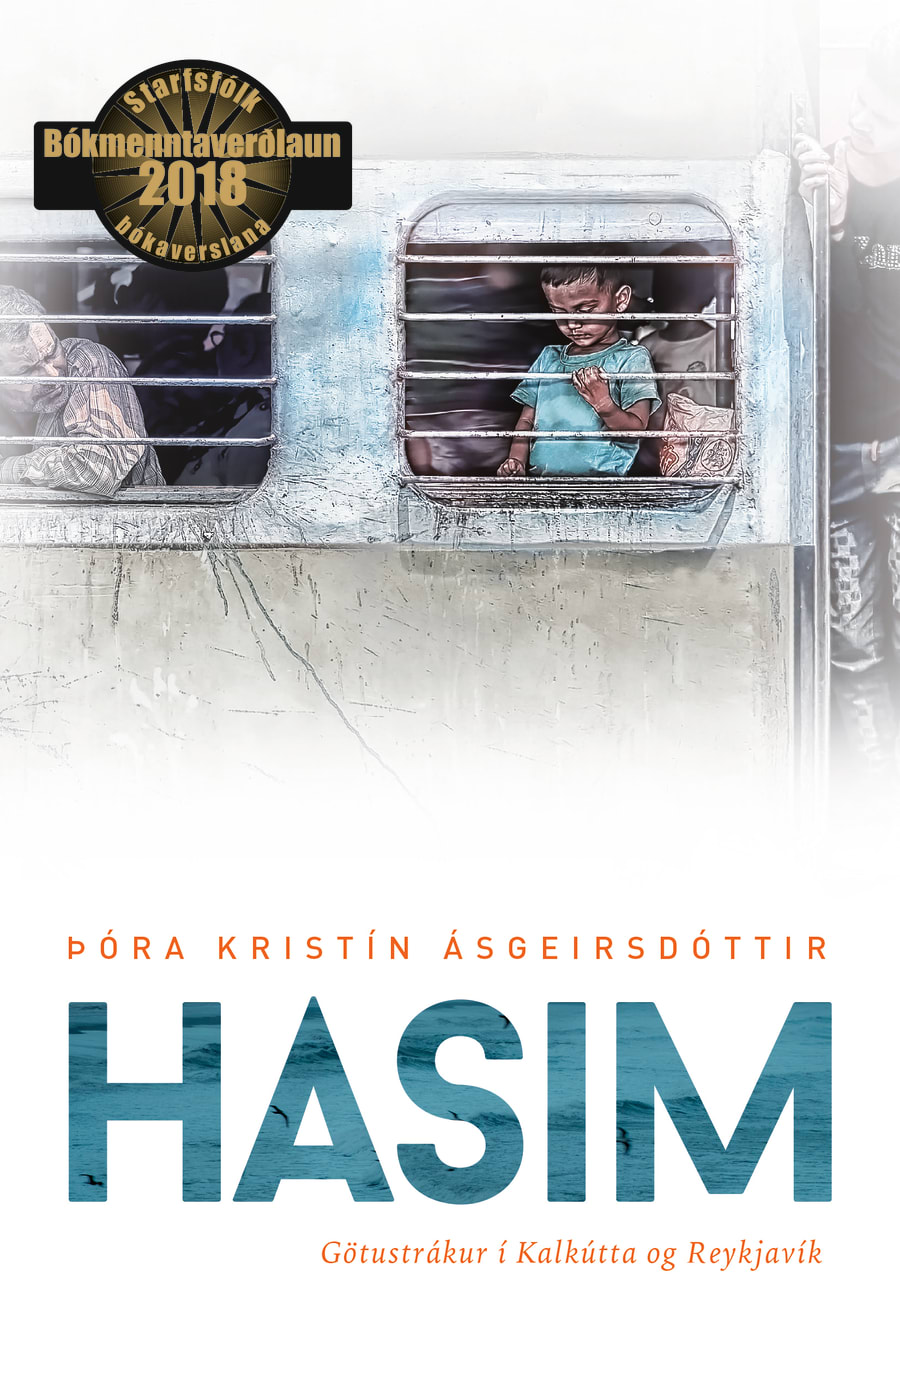 Hasim